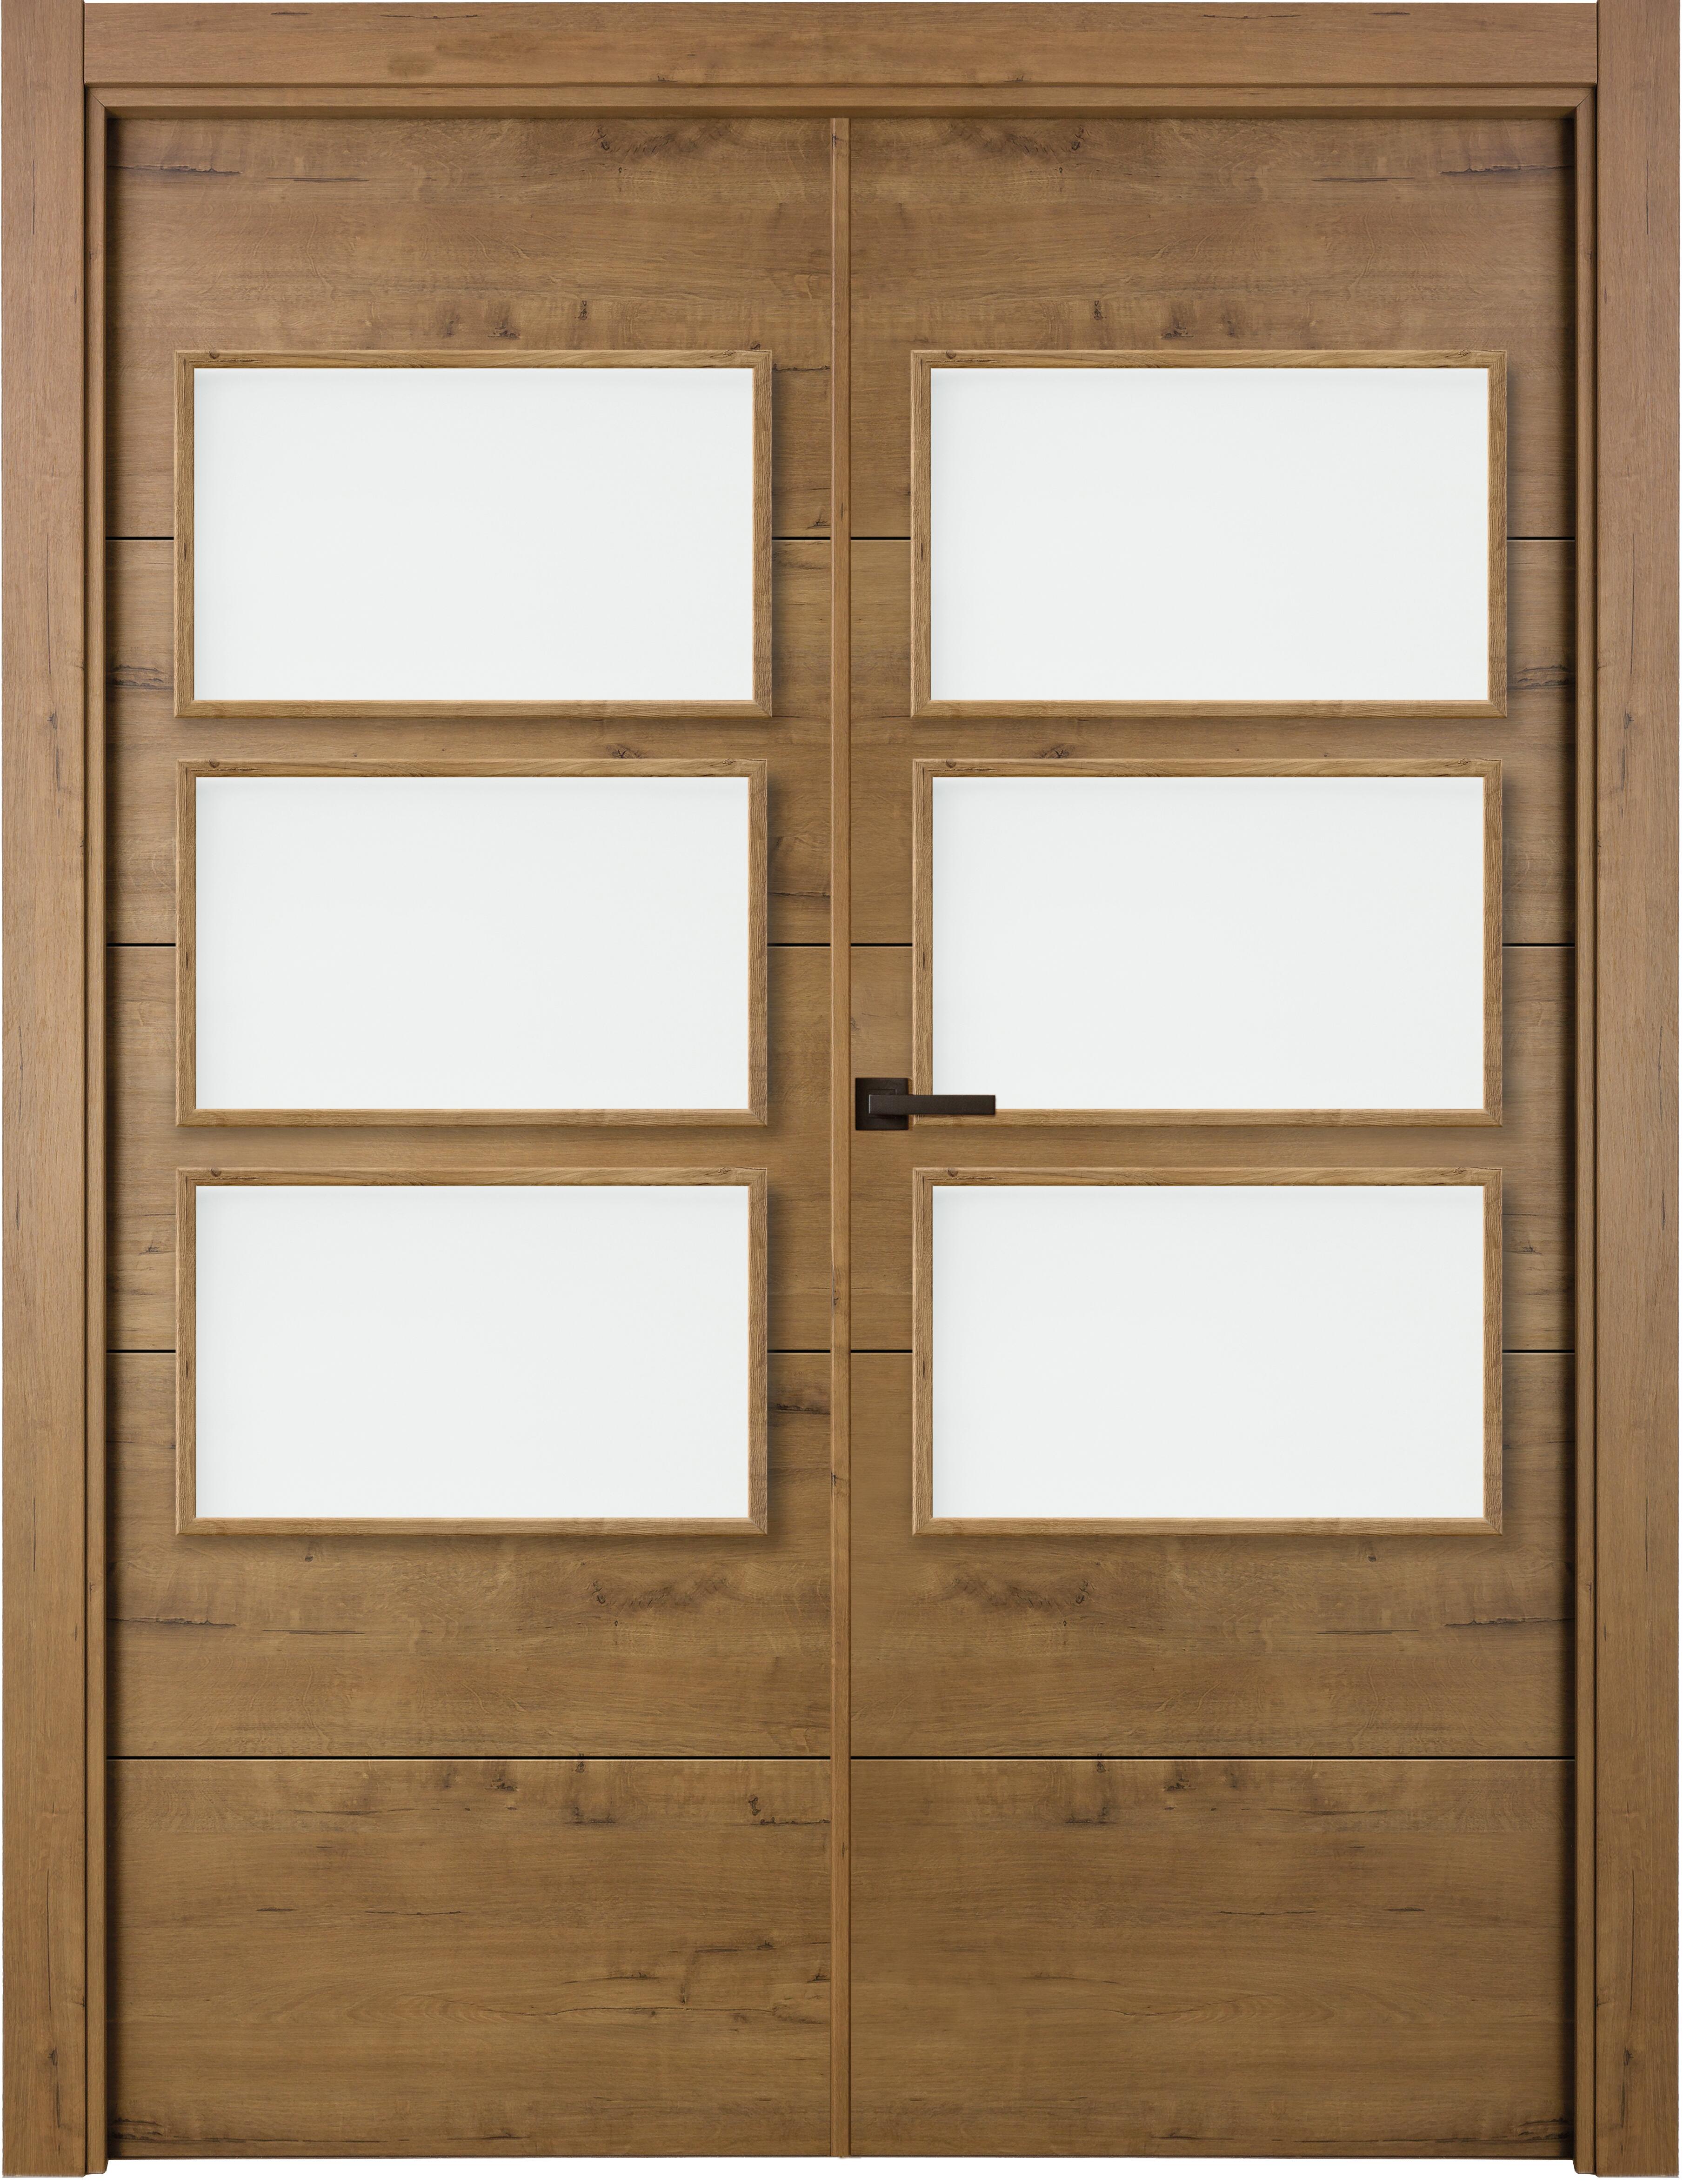 Puerta berna gold doble con vidriera de apertura derecha de 125 x 203 x 7 cm